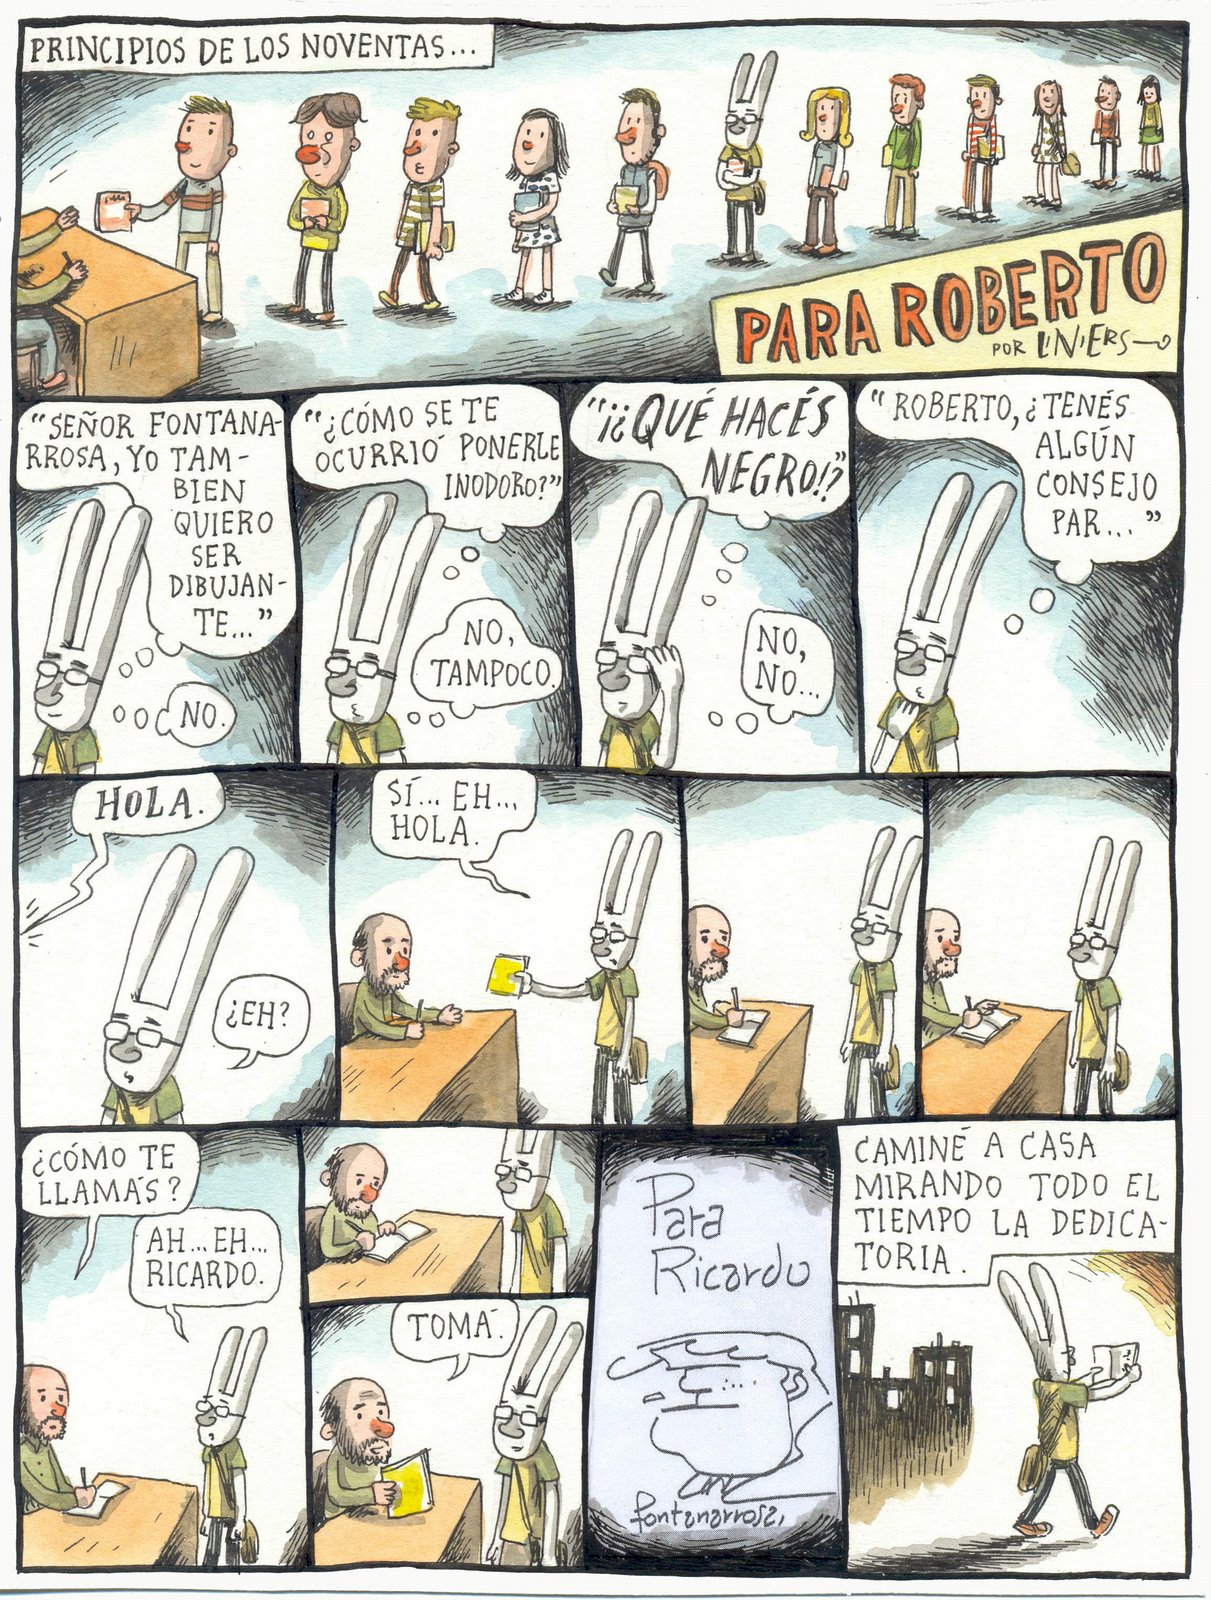 [pararoberto+por+Liniers.jpg]